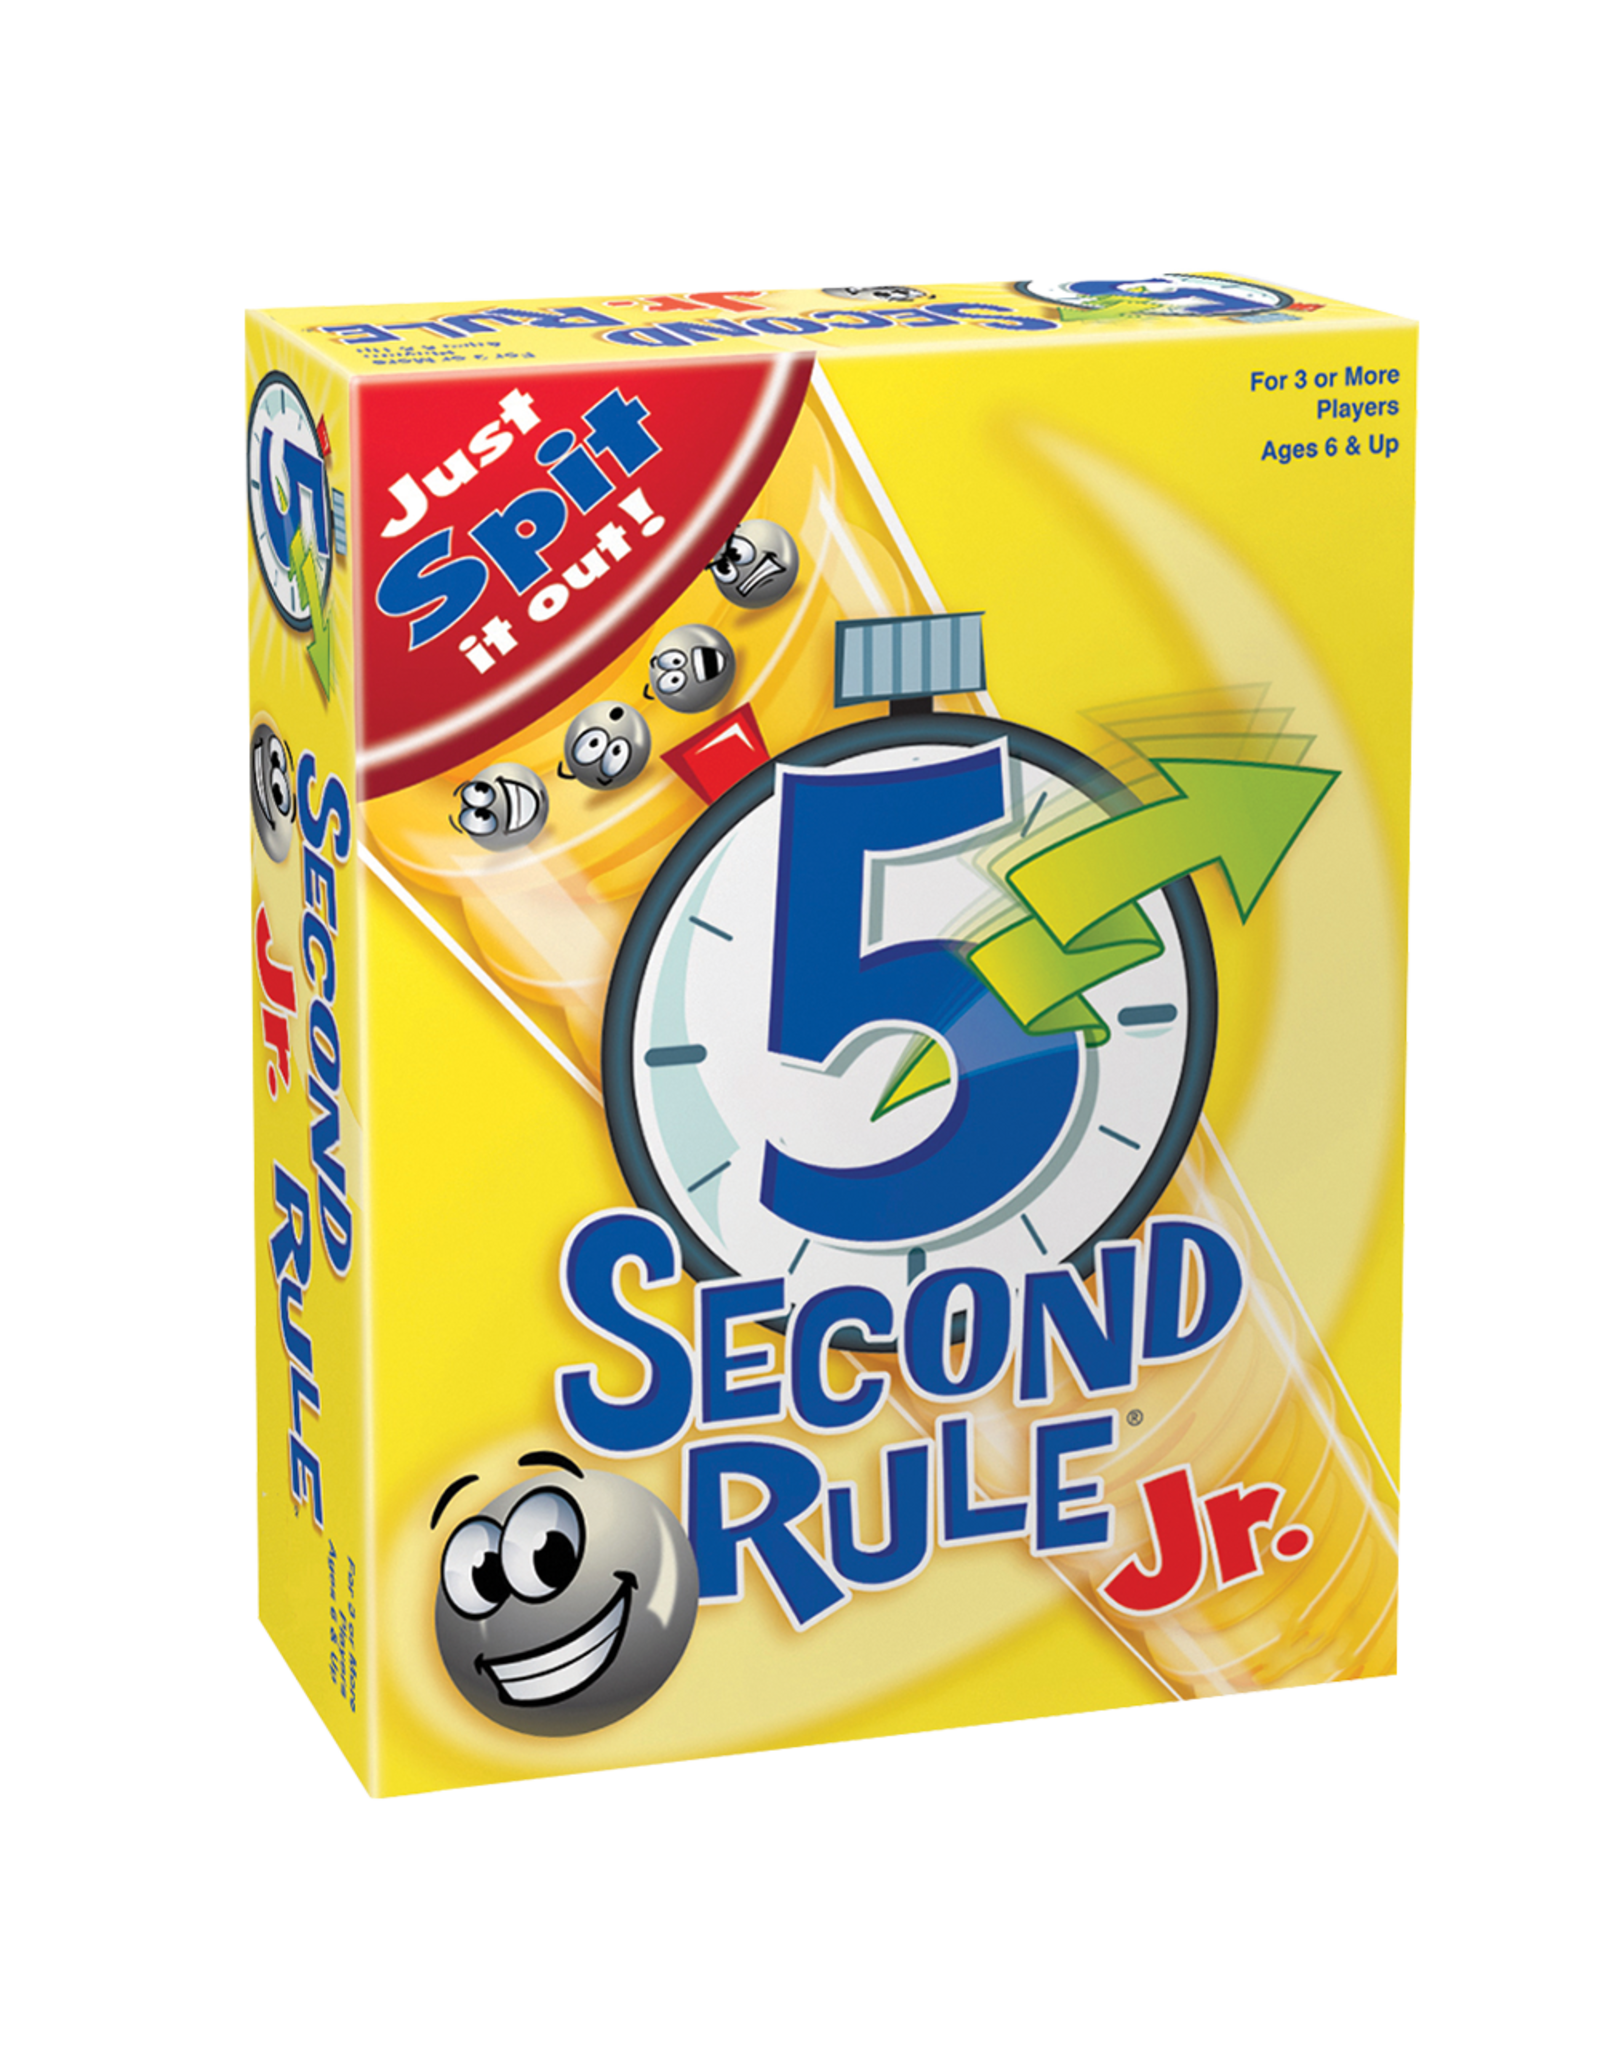 PLAYMONSTER 5 Second Rule Jr.